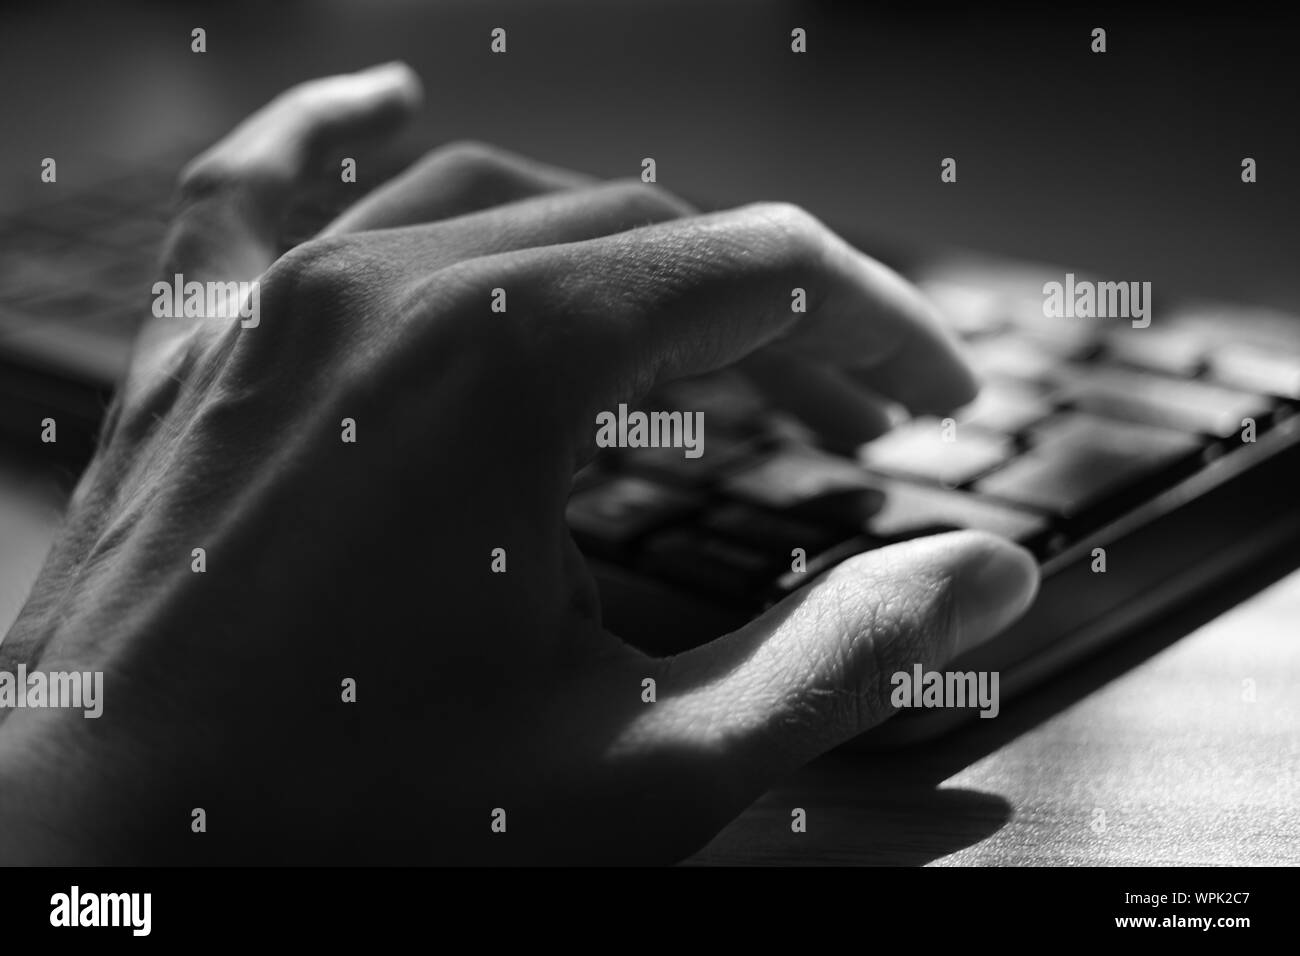 Les jeunes main humaine est saisie au clavier, selective focus, photo en noir et blanc. Banque D'Images